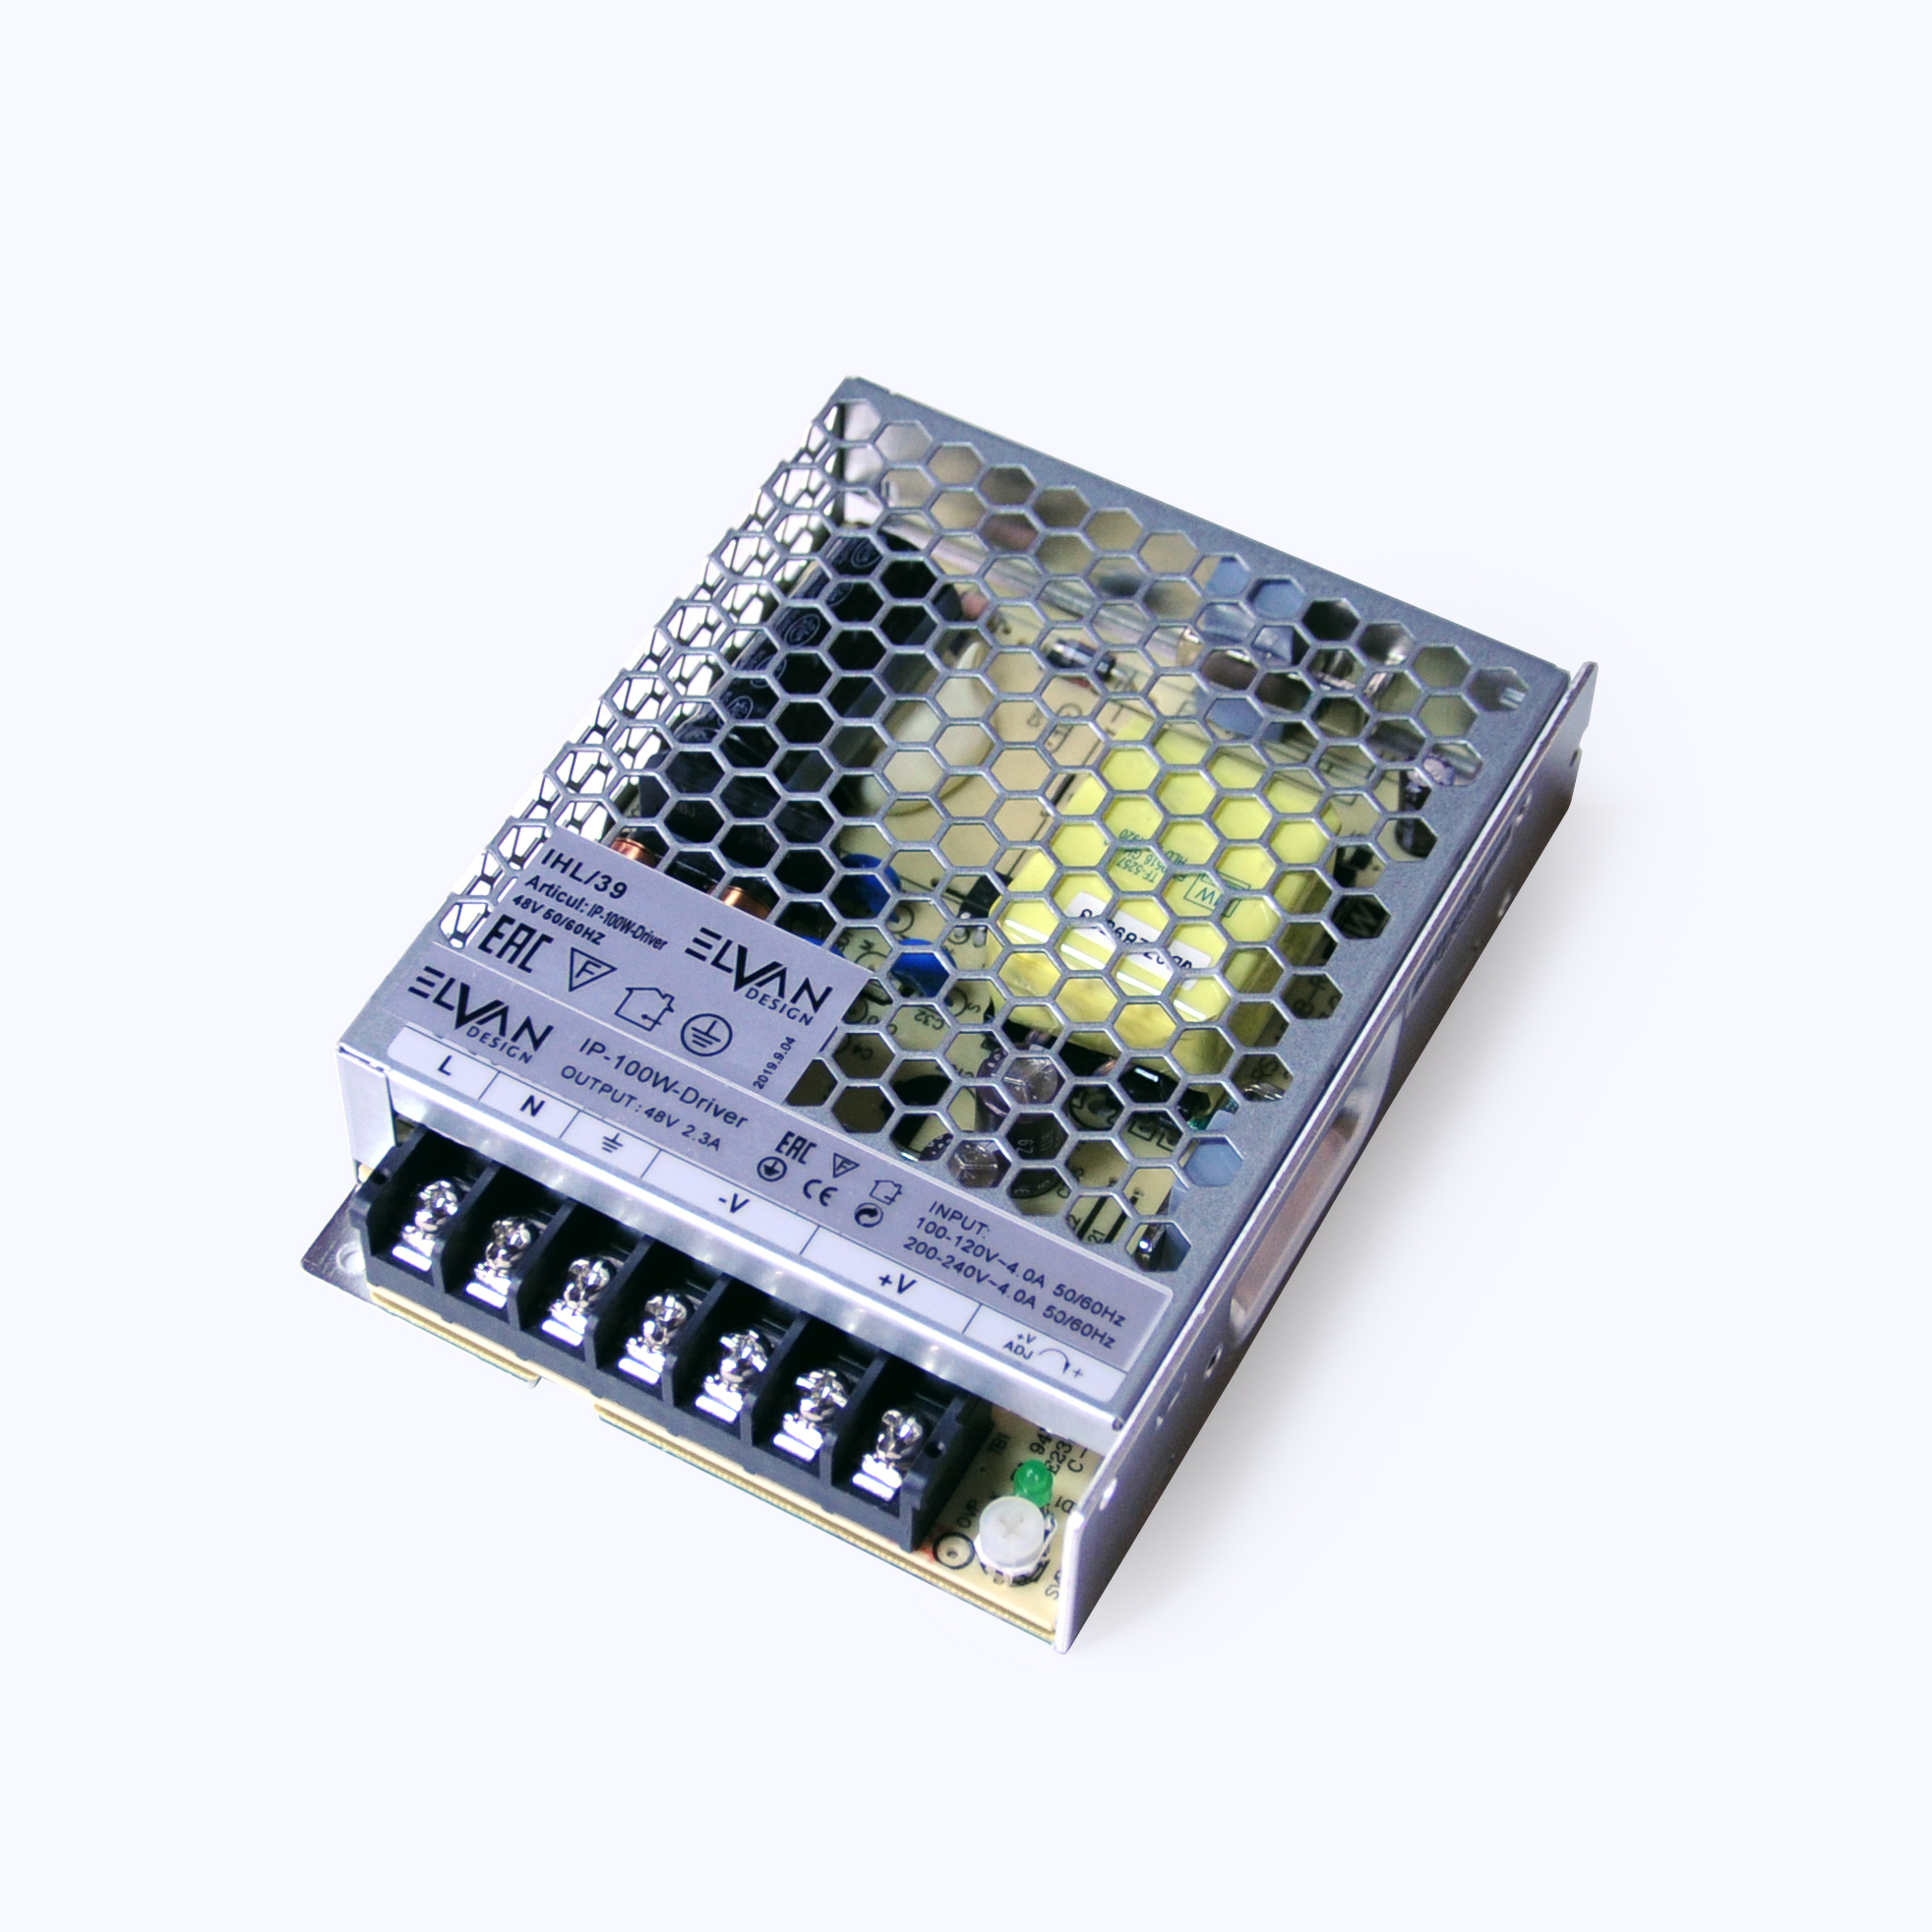 Драйвер для LED ленты Elvan IP-100W-Driver